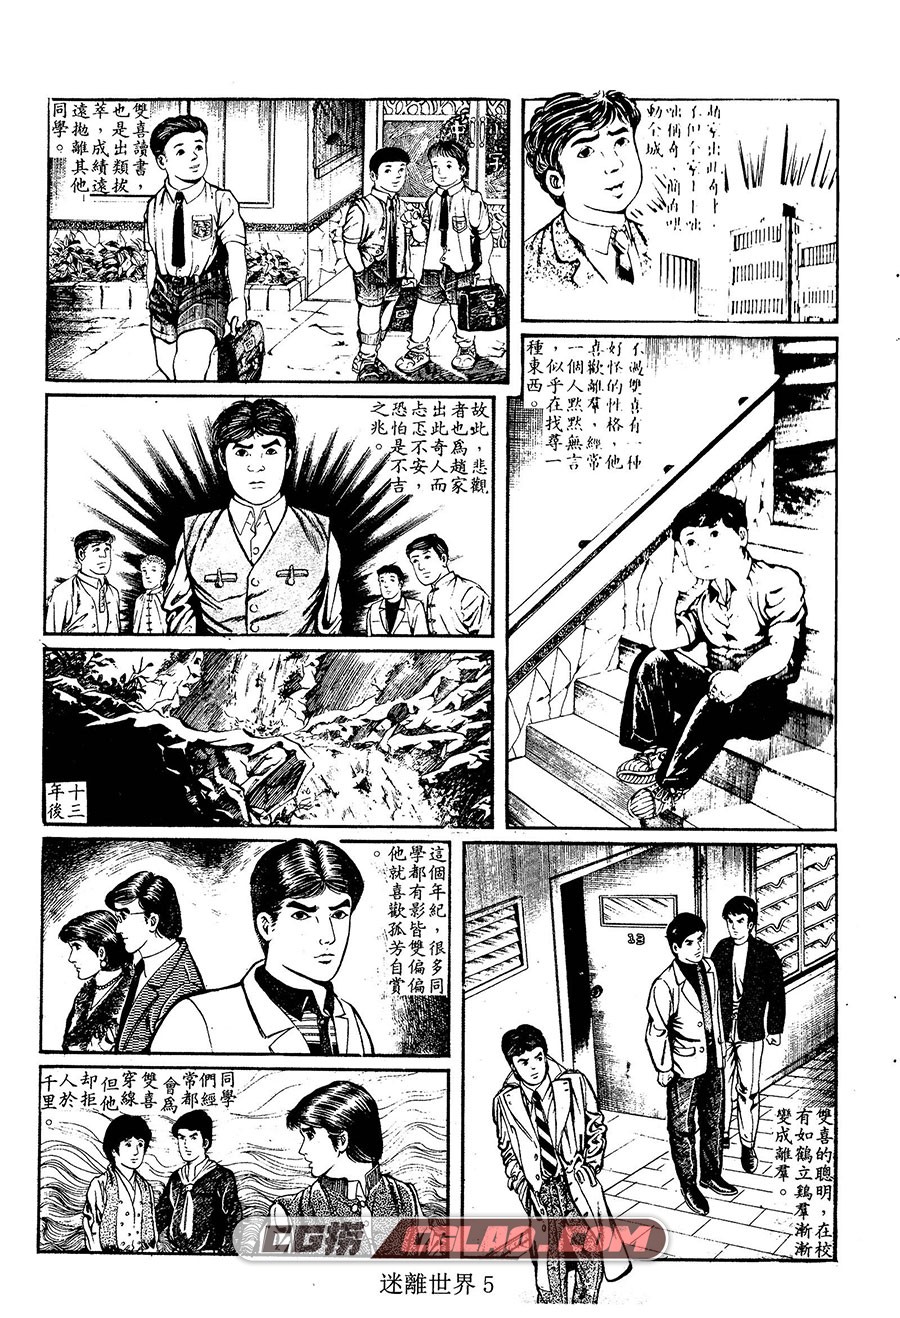 迷离世界 上官小威 1-2册 全集漫画下载 百度网盘,05.jpg